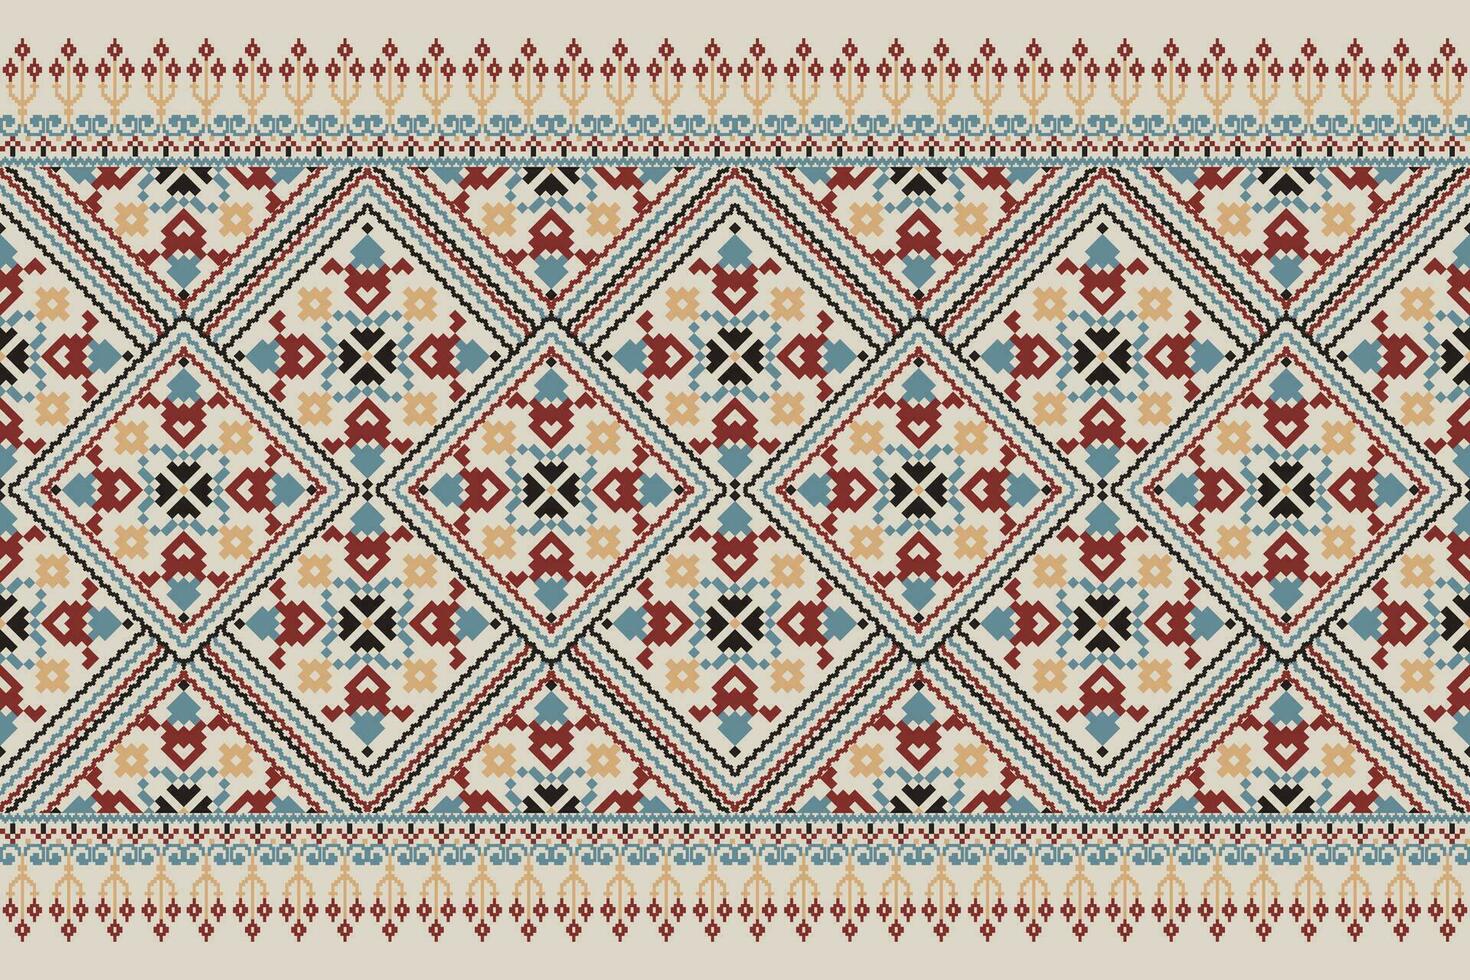 floral cruzar puntada bordado en gris fondo.geometrico étnico oriental modelo tradicional.azteca estilo resumen vector ilustración.diseño para textura,tela,ropa,envoltura,decoración,pareo.